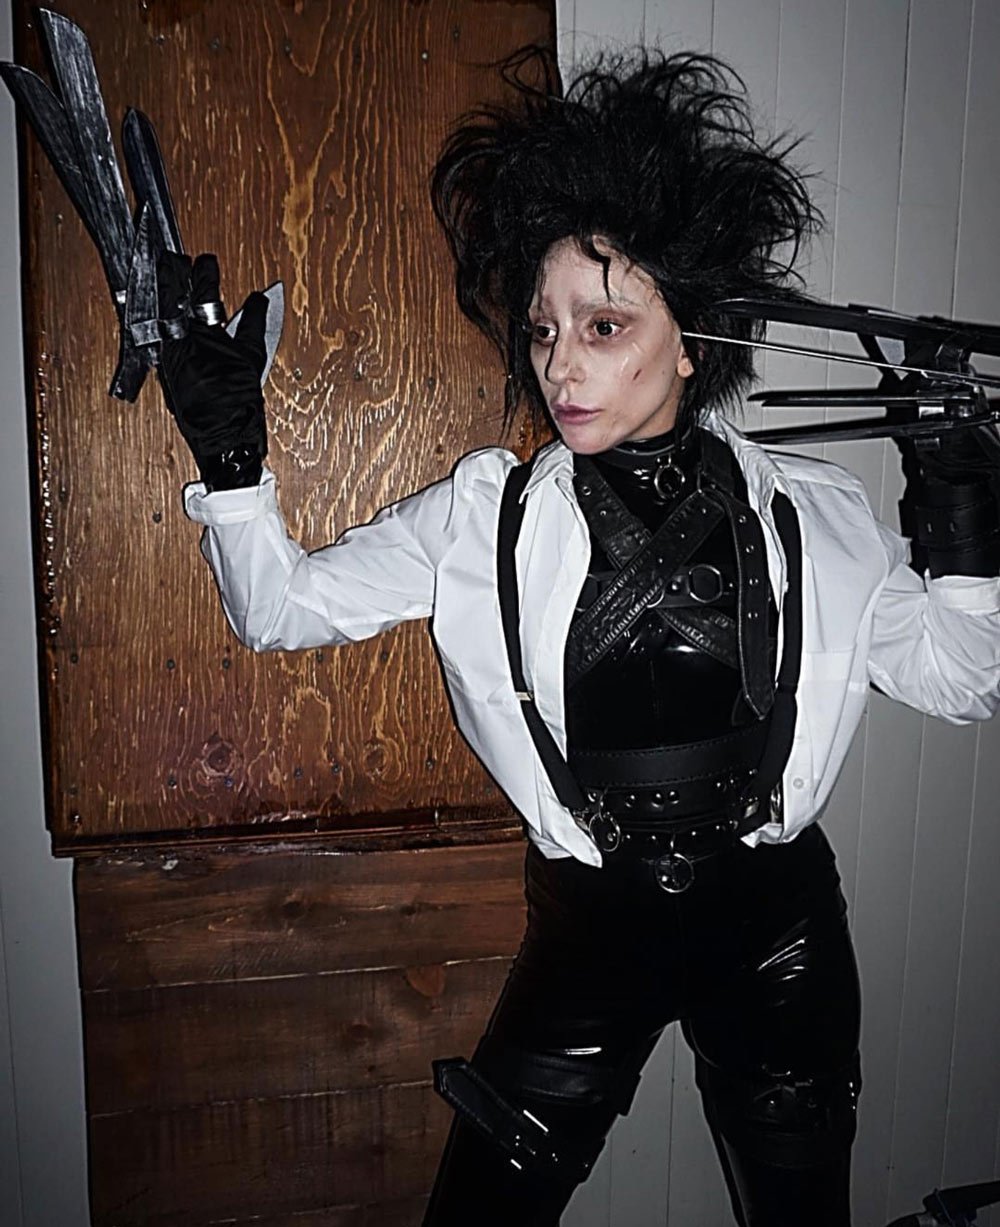 Heidi Klum hem makyaj, hem kostüm ve hem de korkunç görünüm açısından en iyi isimdi. Onun ardından ise Lady Gaga geliyor. Johnny Deep'in başrolde oynadığı Makas Eller filmindeki karaktere bürünen Gaga makyaj ve kostümüyle çok başarılıydı...